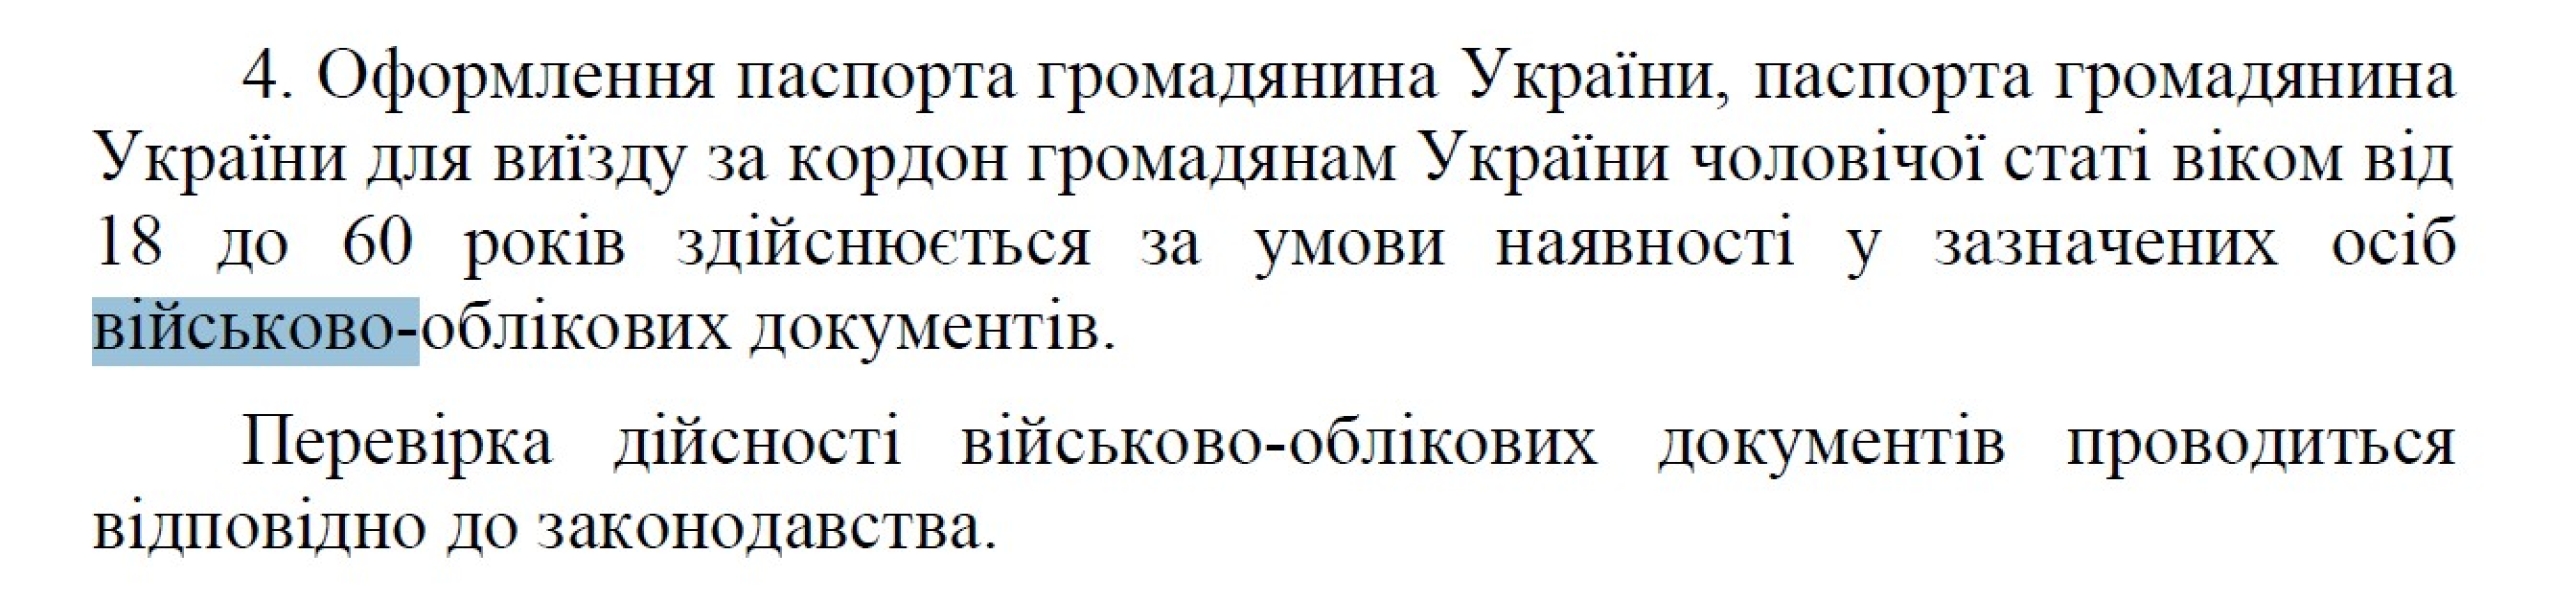 Паспорт України за кордоном, військово-облікові документи, постанова №648